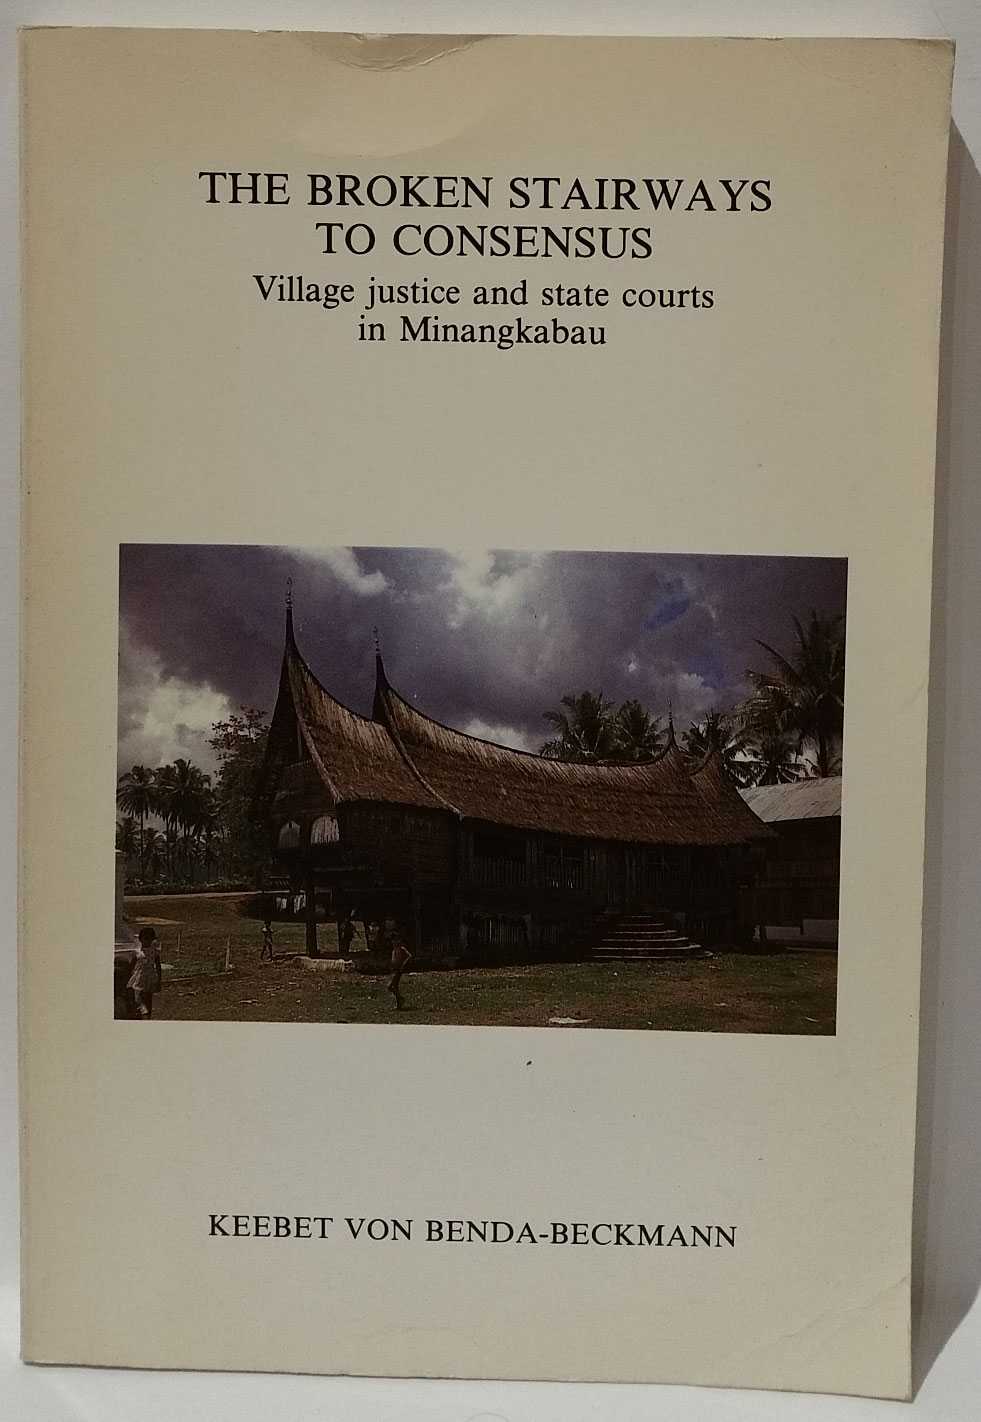 Keebet von Benda-Beckman - The Broken Stairways To Consensus: Village justice and state courts in Minangkabau